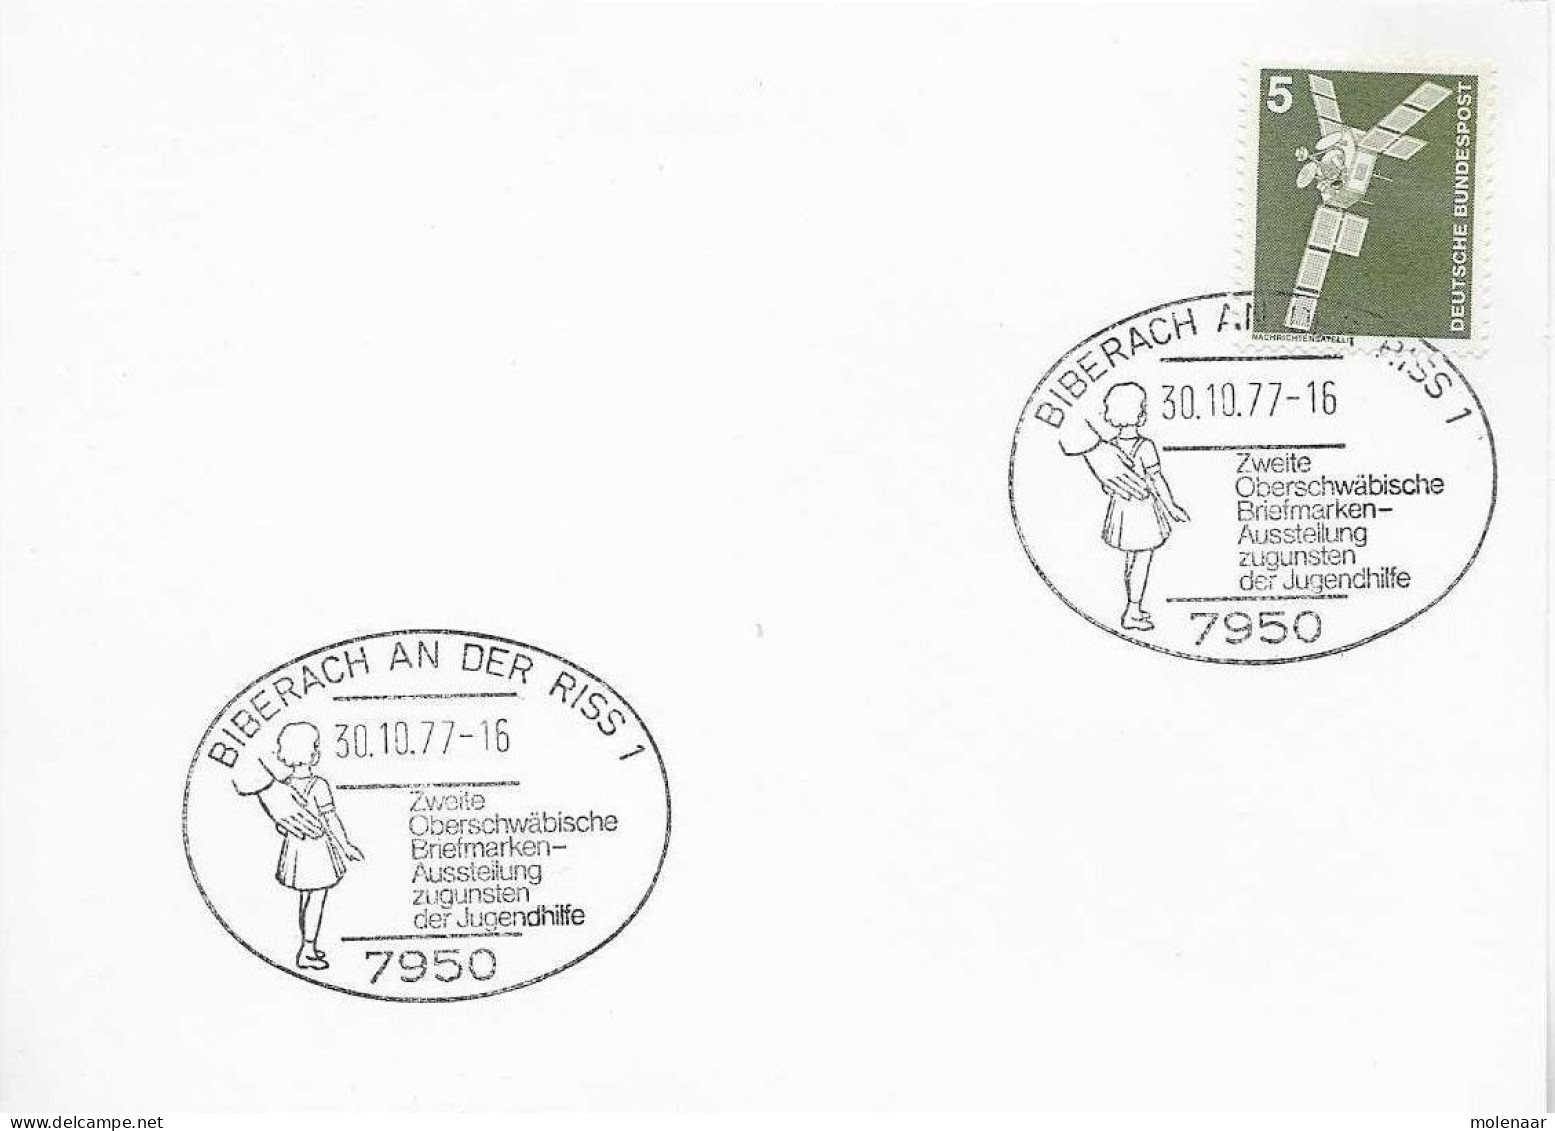 Postzegels > Europa > Duitsland > Berlijn > 1970-1979 > Kaart Met No. 494 (17150) - Storia Postale